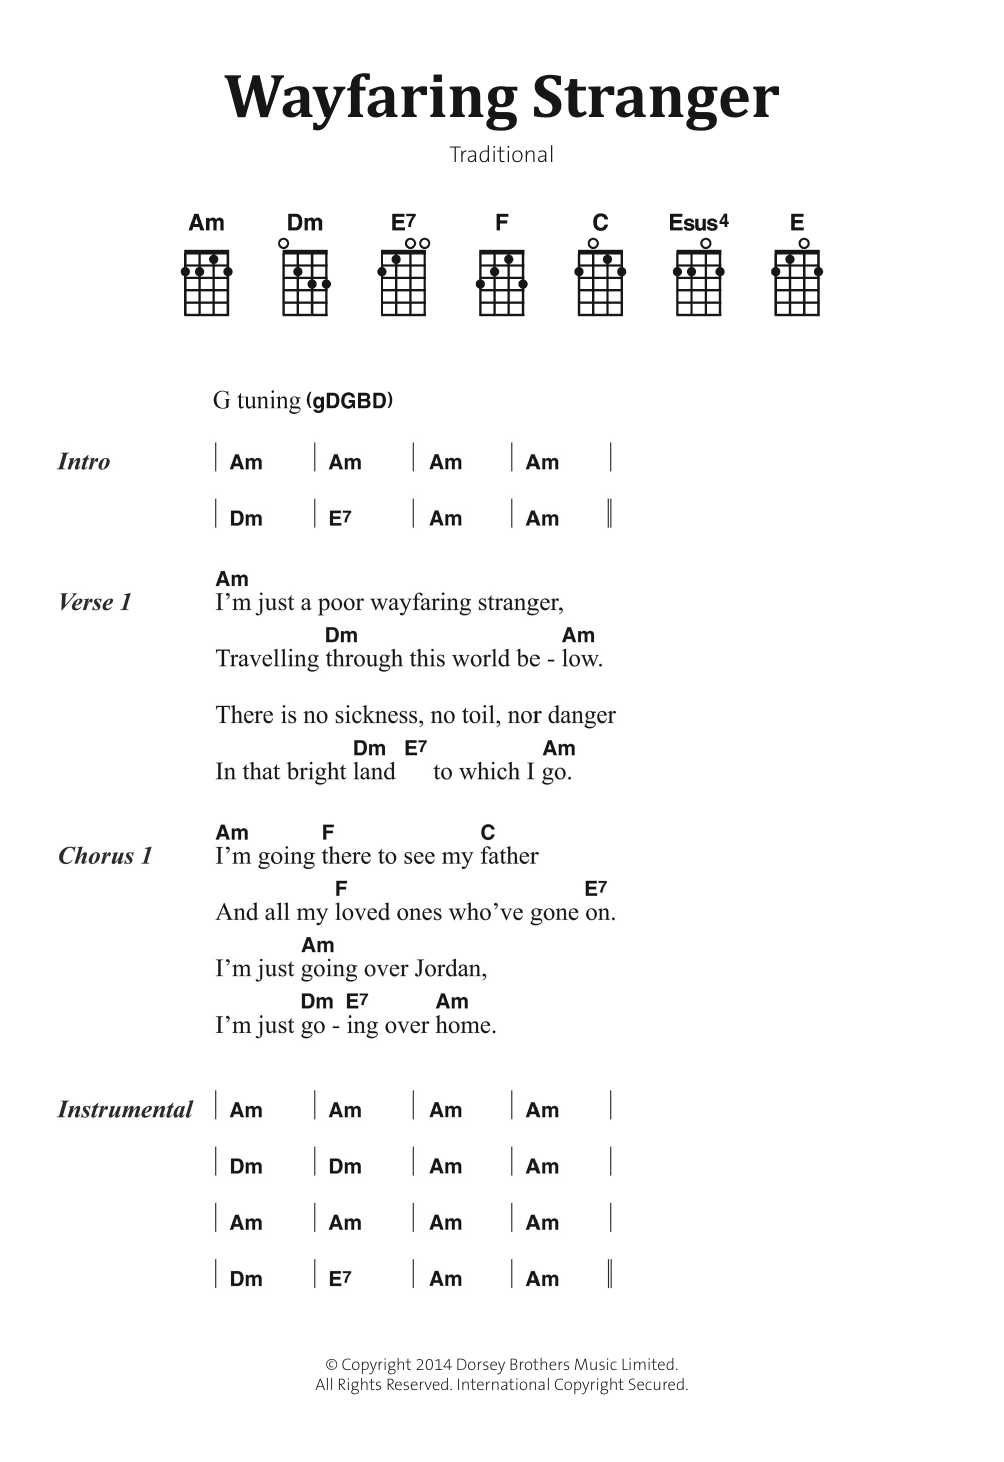 Traditional Folksong Wayfaring Stranger Sheet Music Notes & Chords for Banjo Lyrics & Chords - Download or Print PDF